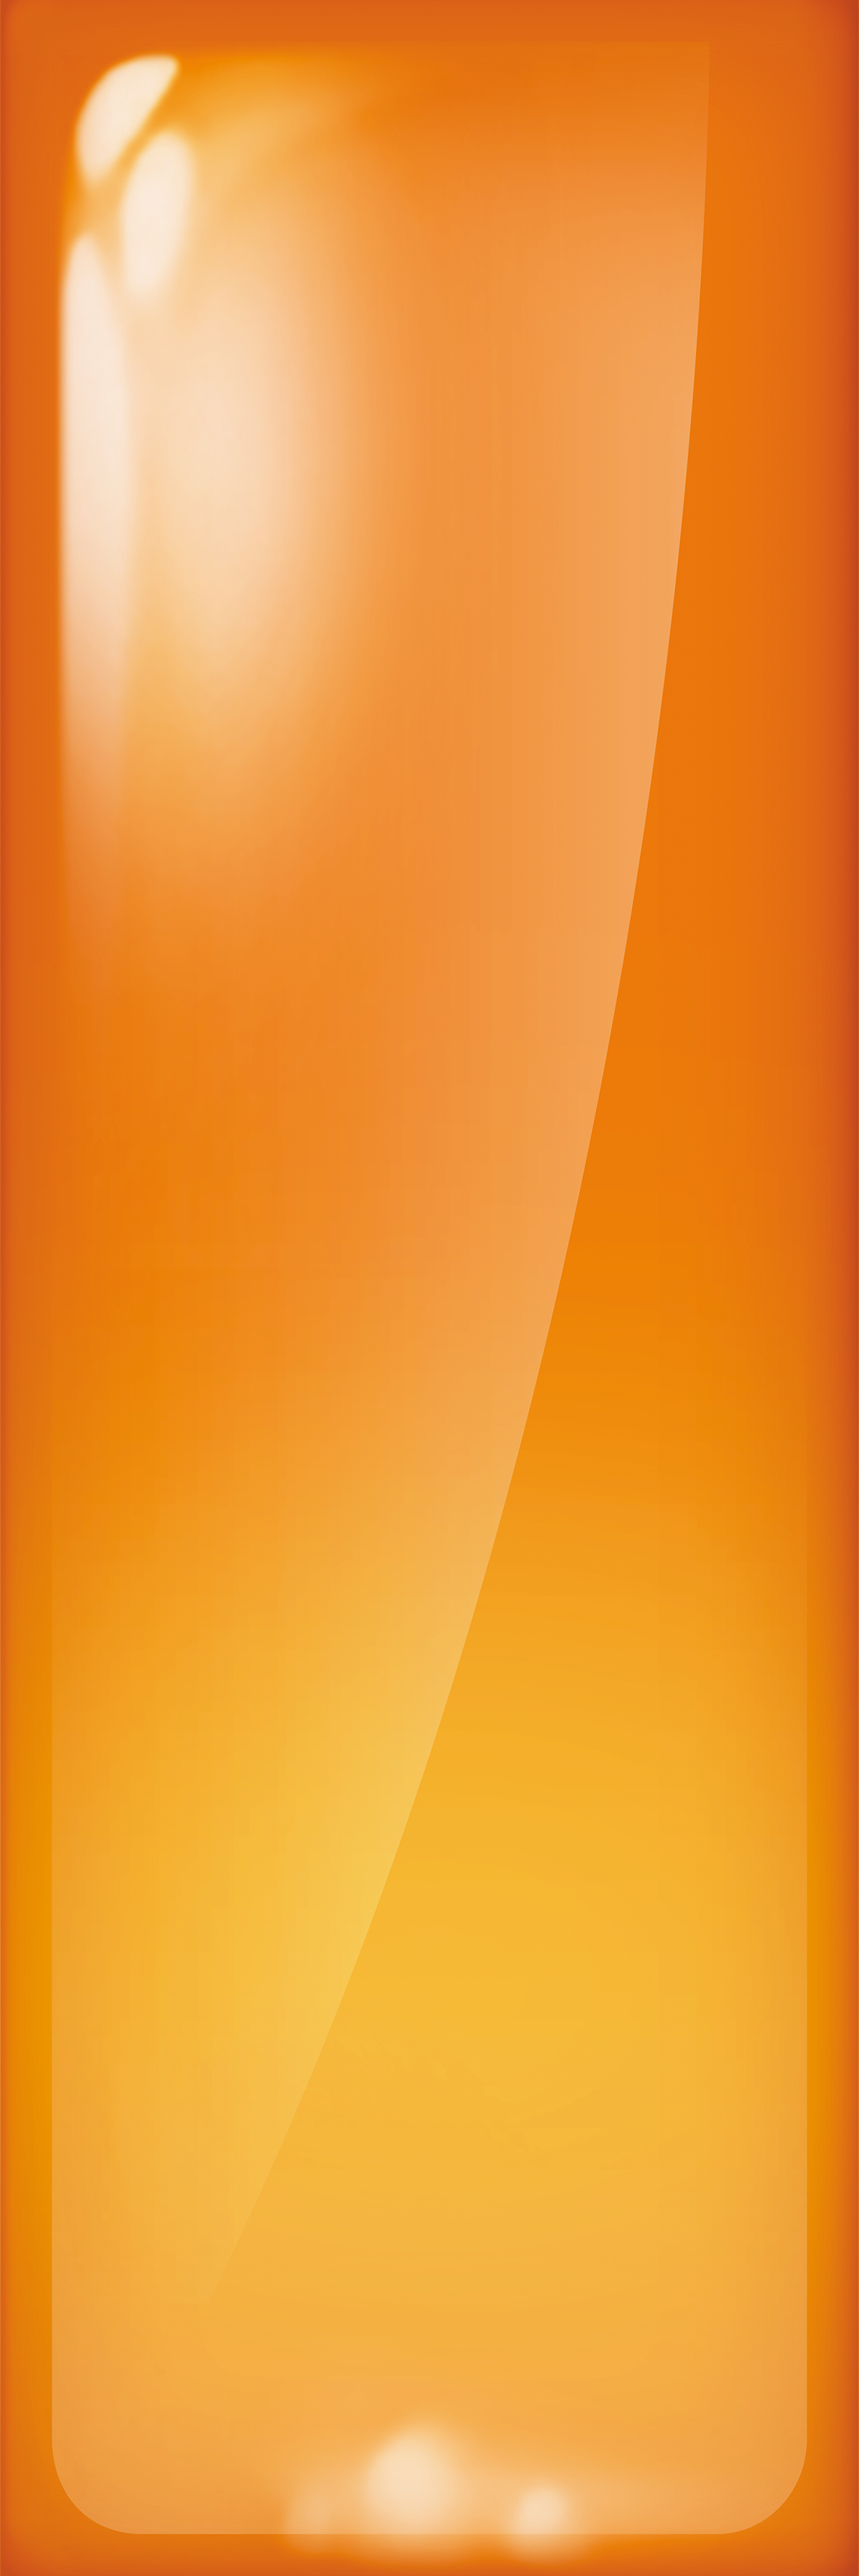 Orange Bubble